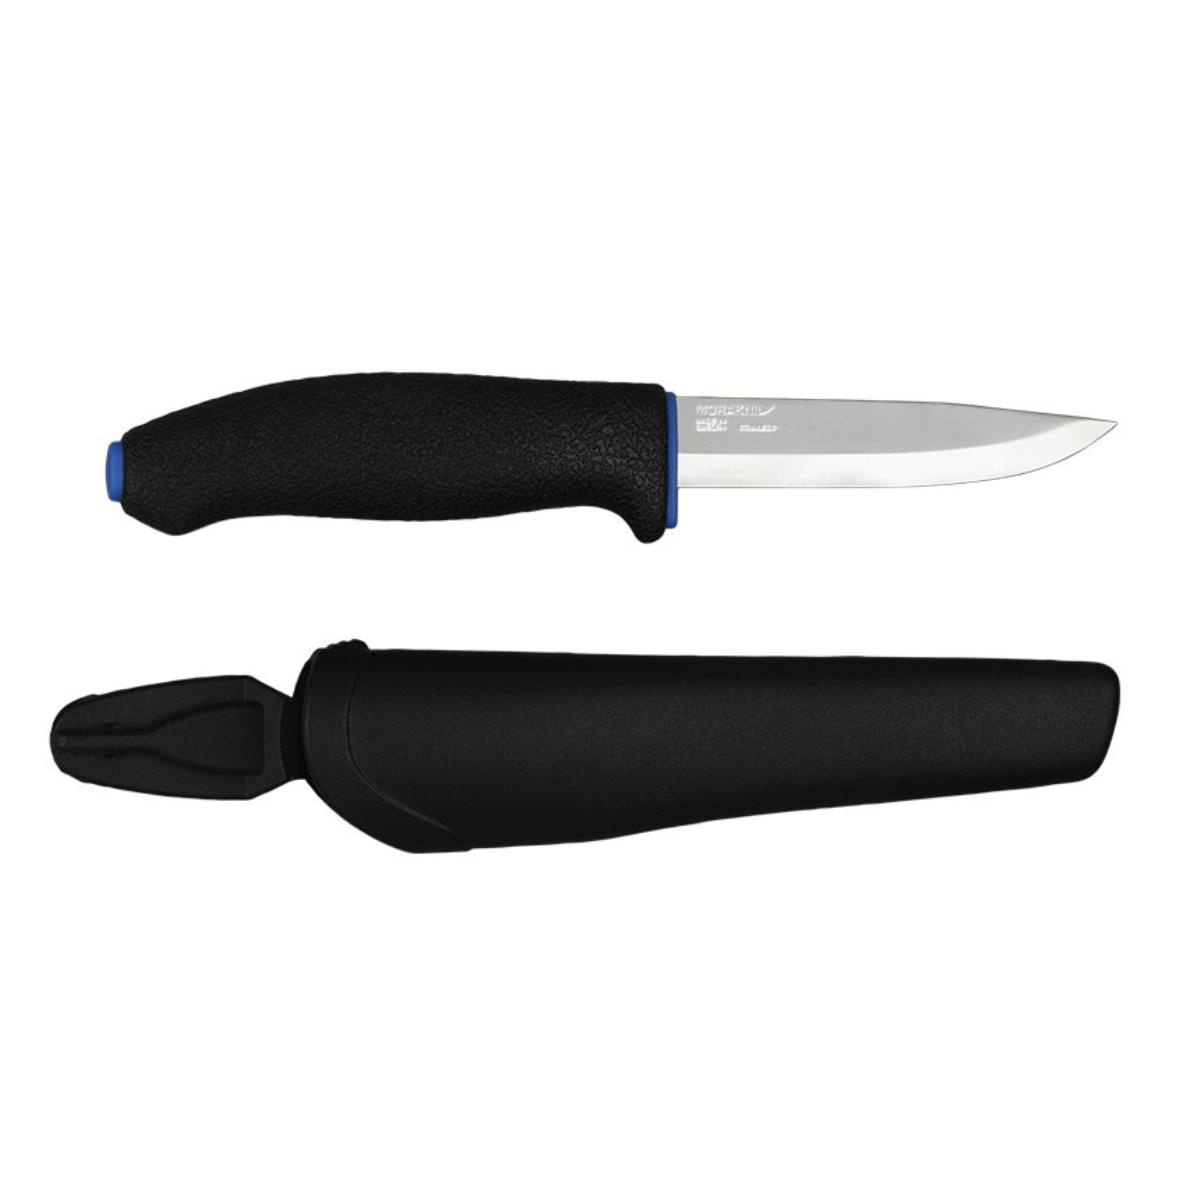 Нож Kniv Craftline Q Allround 0746 (11482) Morakniv нож kniv craftline q allround 0711 11481 morakniv